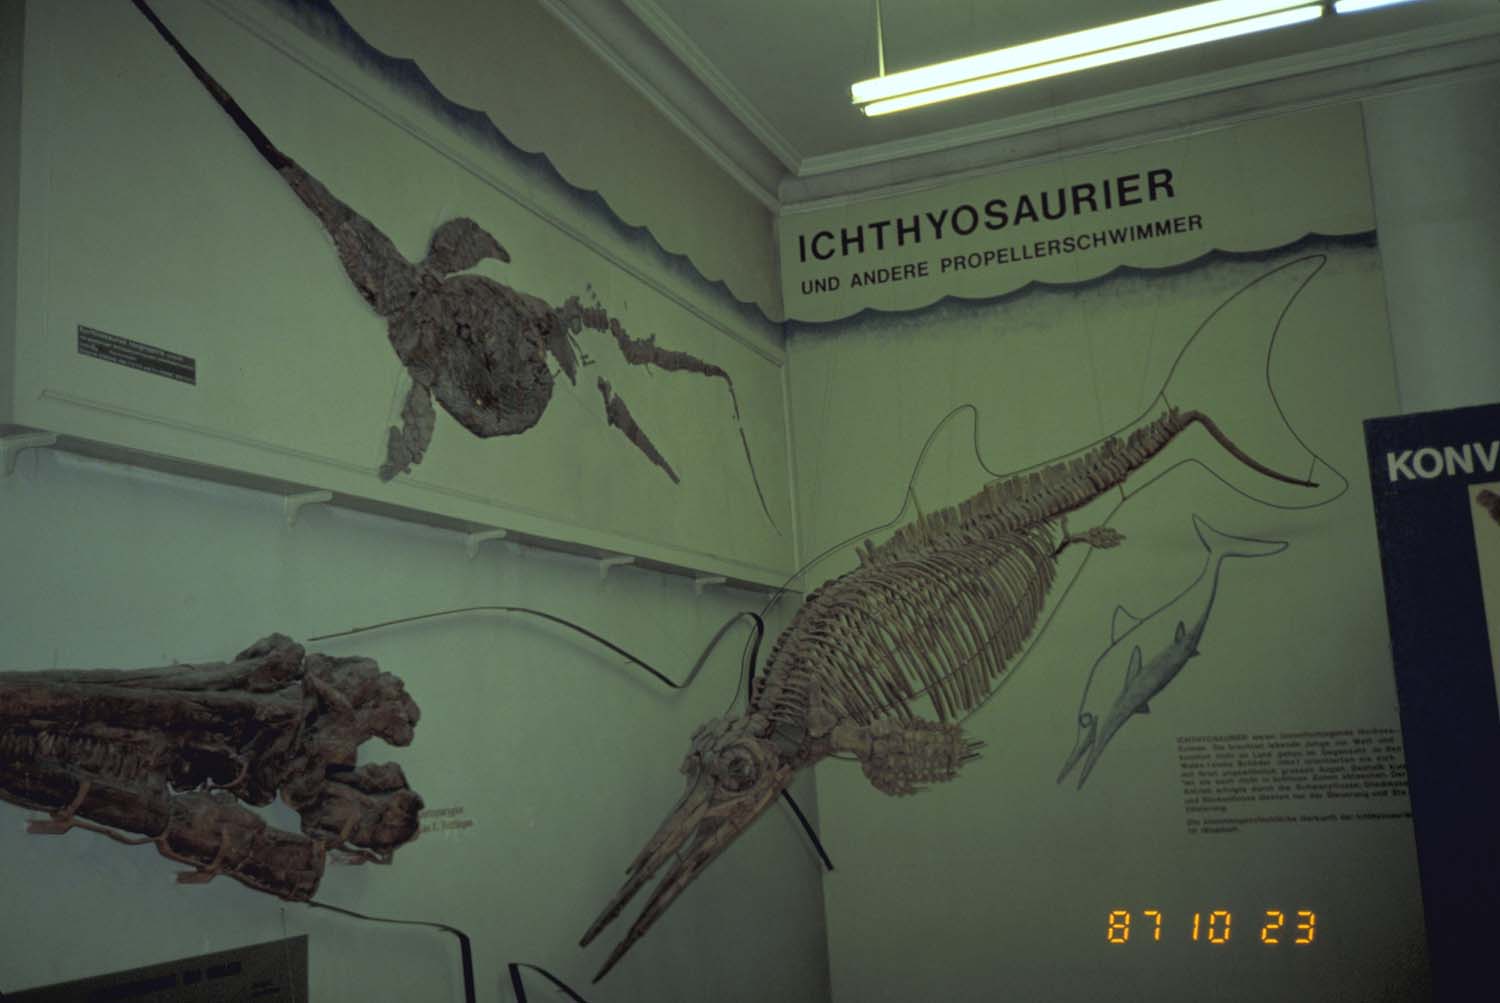 イクチオサウルス [Z461] 化石 - その他